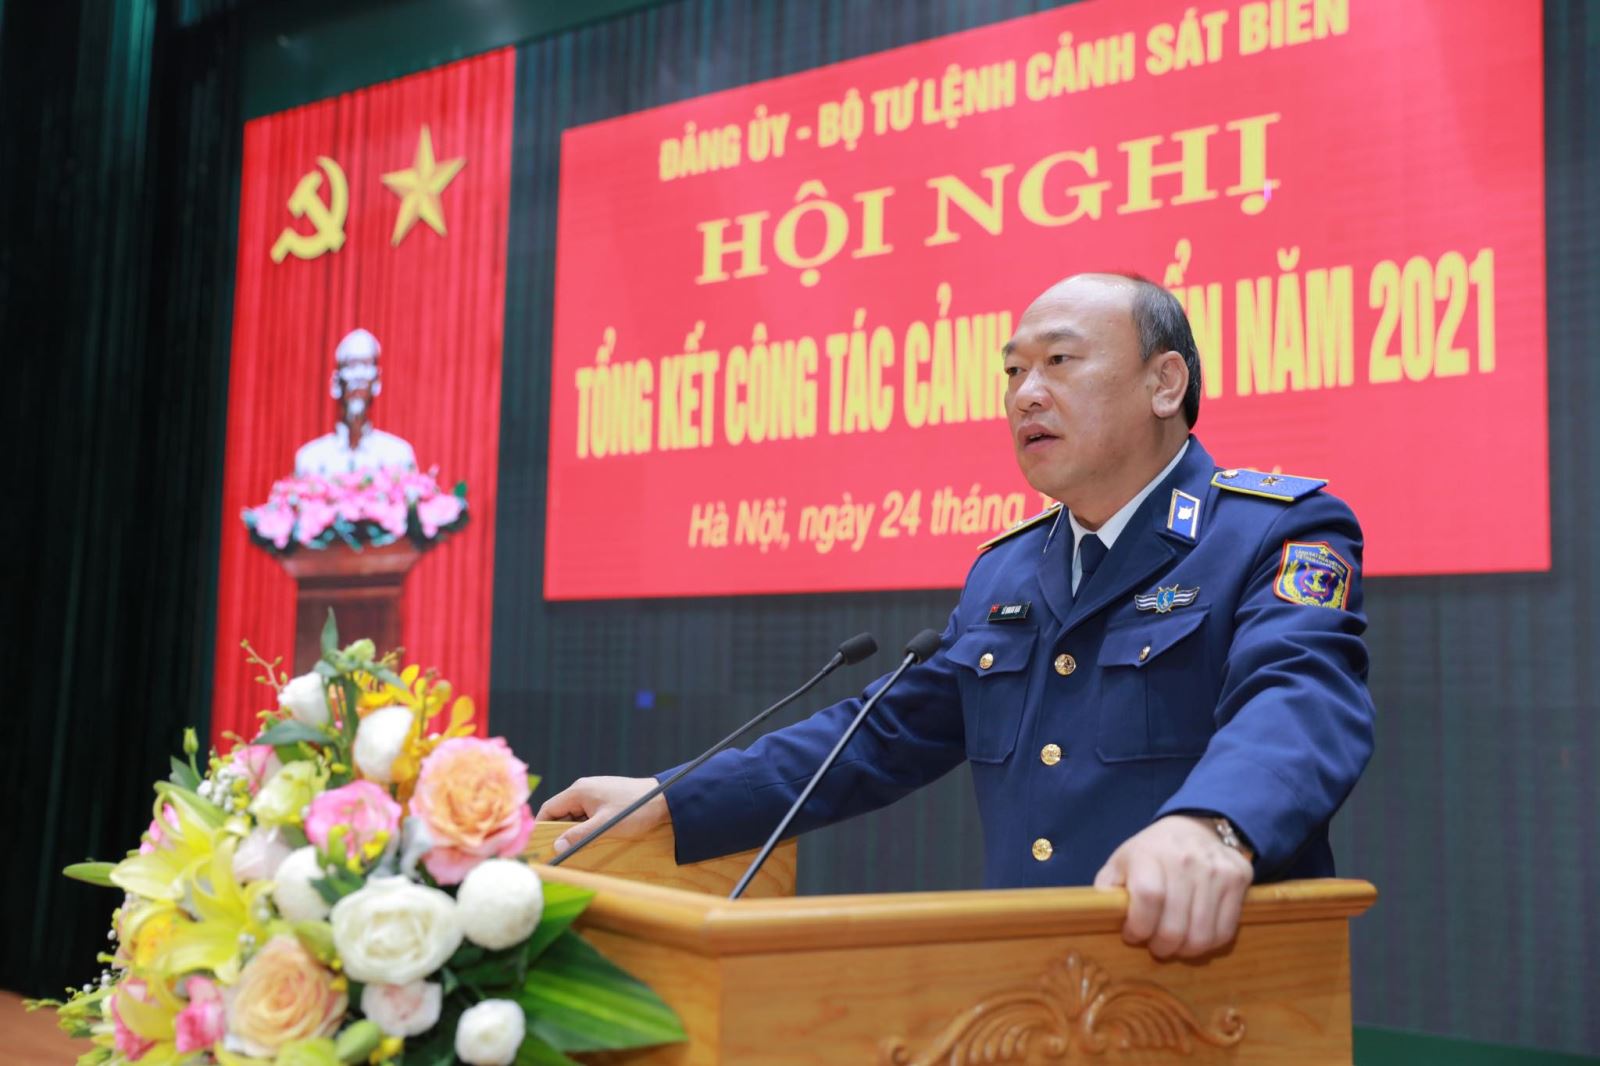  Thiếu tướng Lê Quang Đạo, Tư lệnh Cảnh sát biển Việt Nam phát biểu tại Hội nghị. Ảnh: Thu Phương